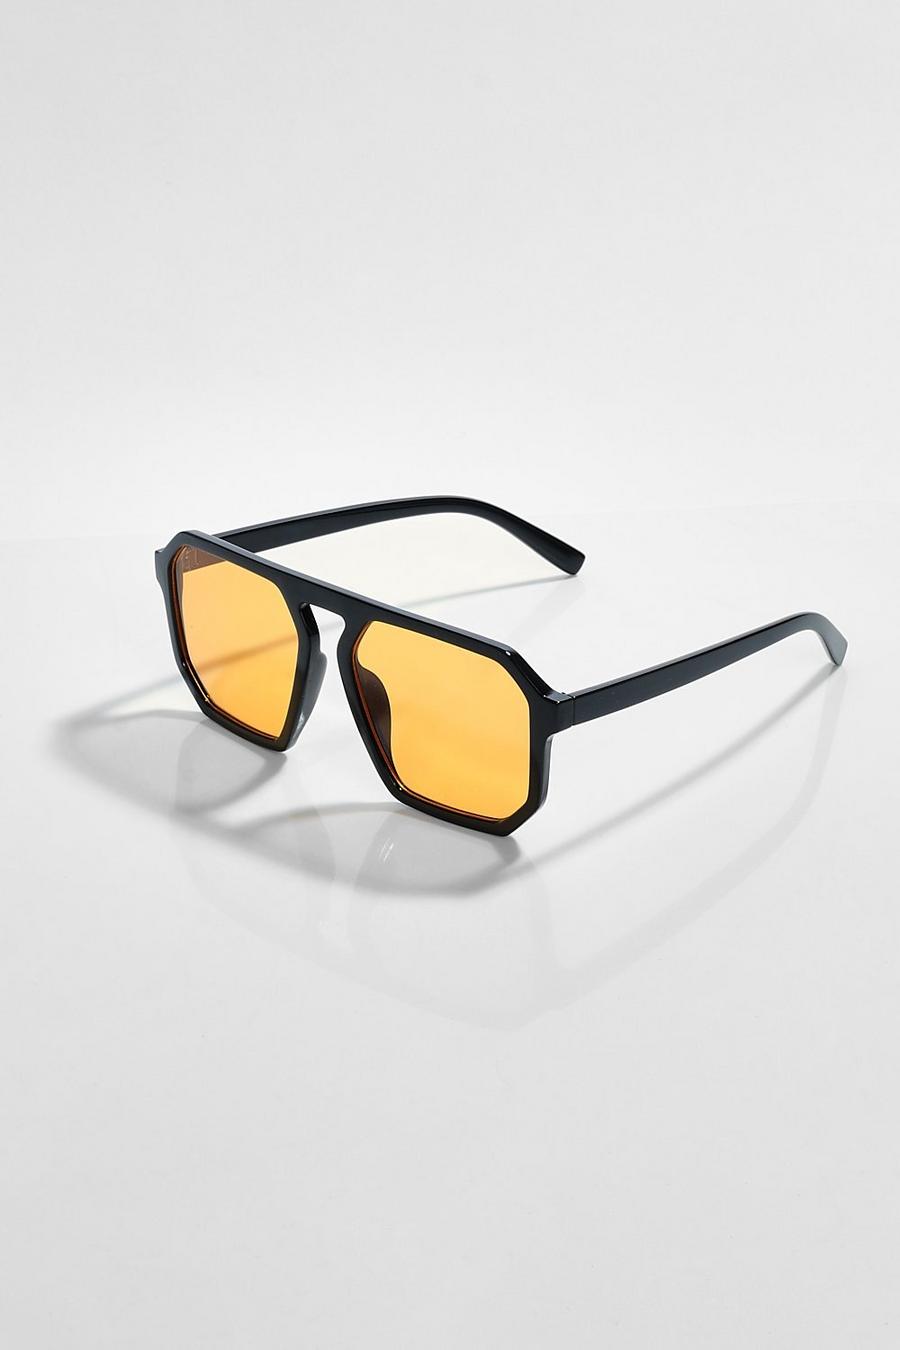 Black 70s Aviator Sunglasses